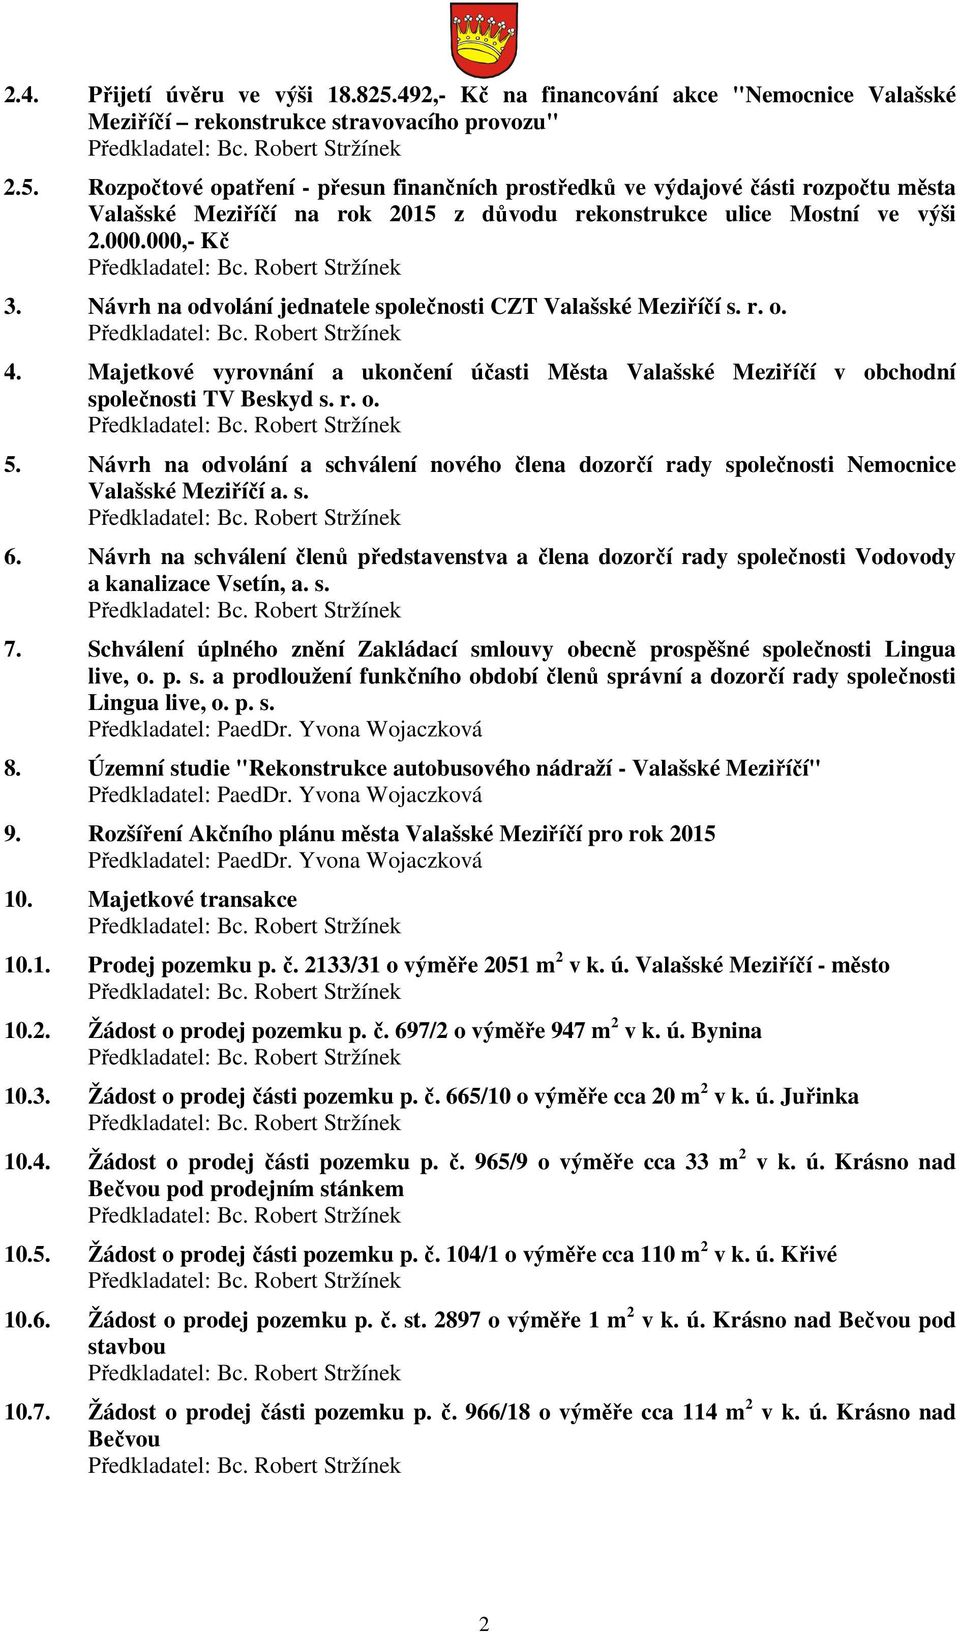 Návrh na odvolání a schválení nového člena dozorčí rady společnosti Nemocnice Valašské Meziříčí a. s. 6.